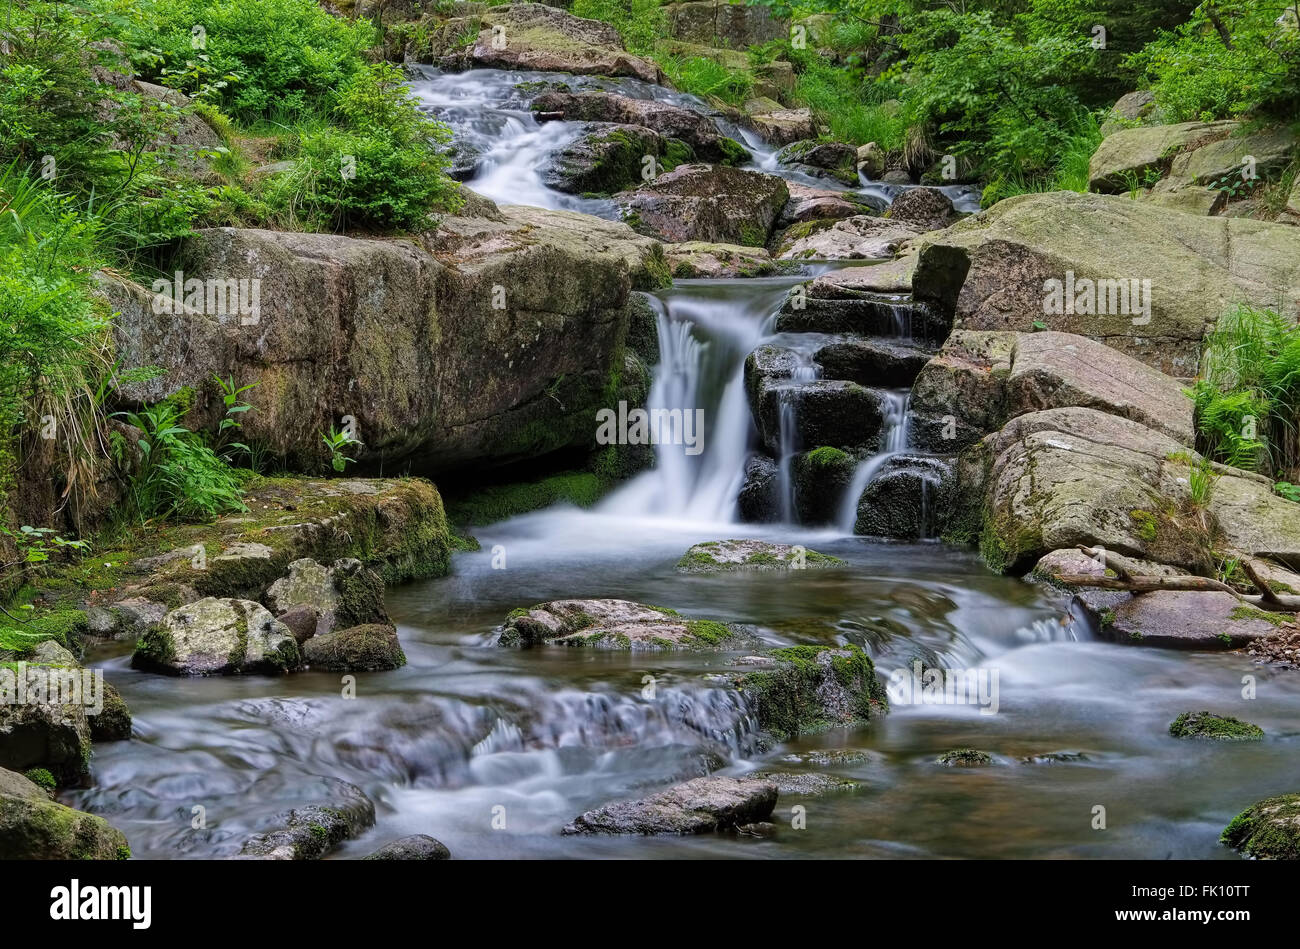 Bodewasserfall Im Harz Wasserfall Fluss Bode Im Harz Mountains Stockfotografie Alamy